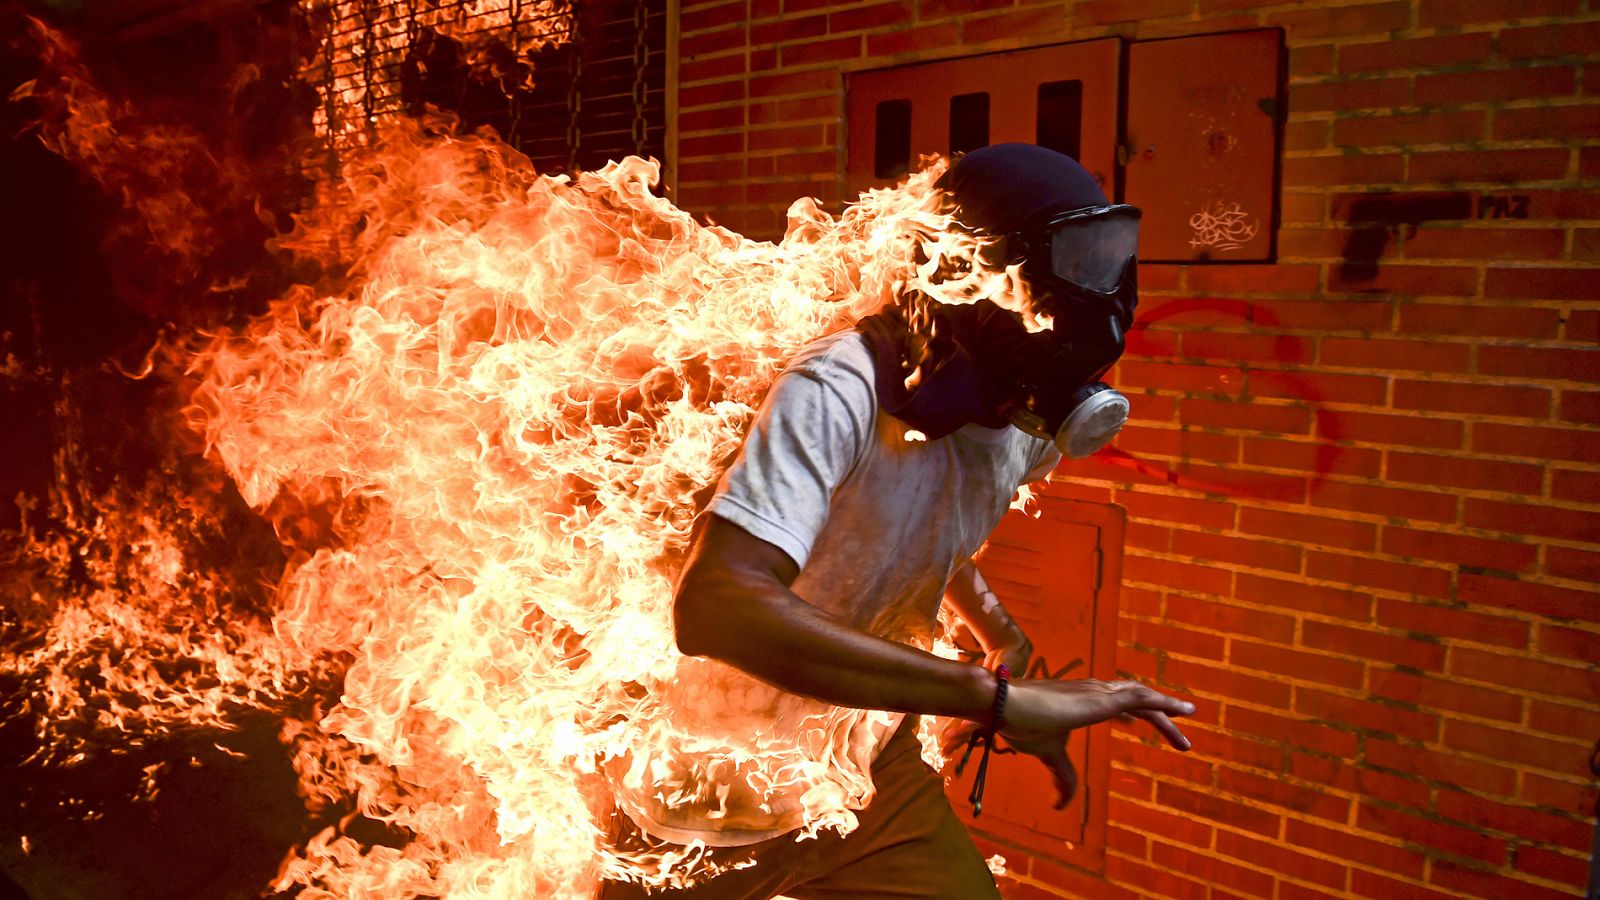 El venezolano Ronaldo Schemidt recibe el World Press Photo por una imagen de unos disturbios en Caracas